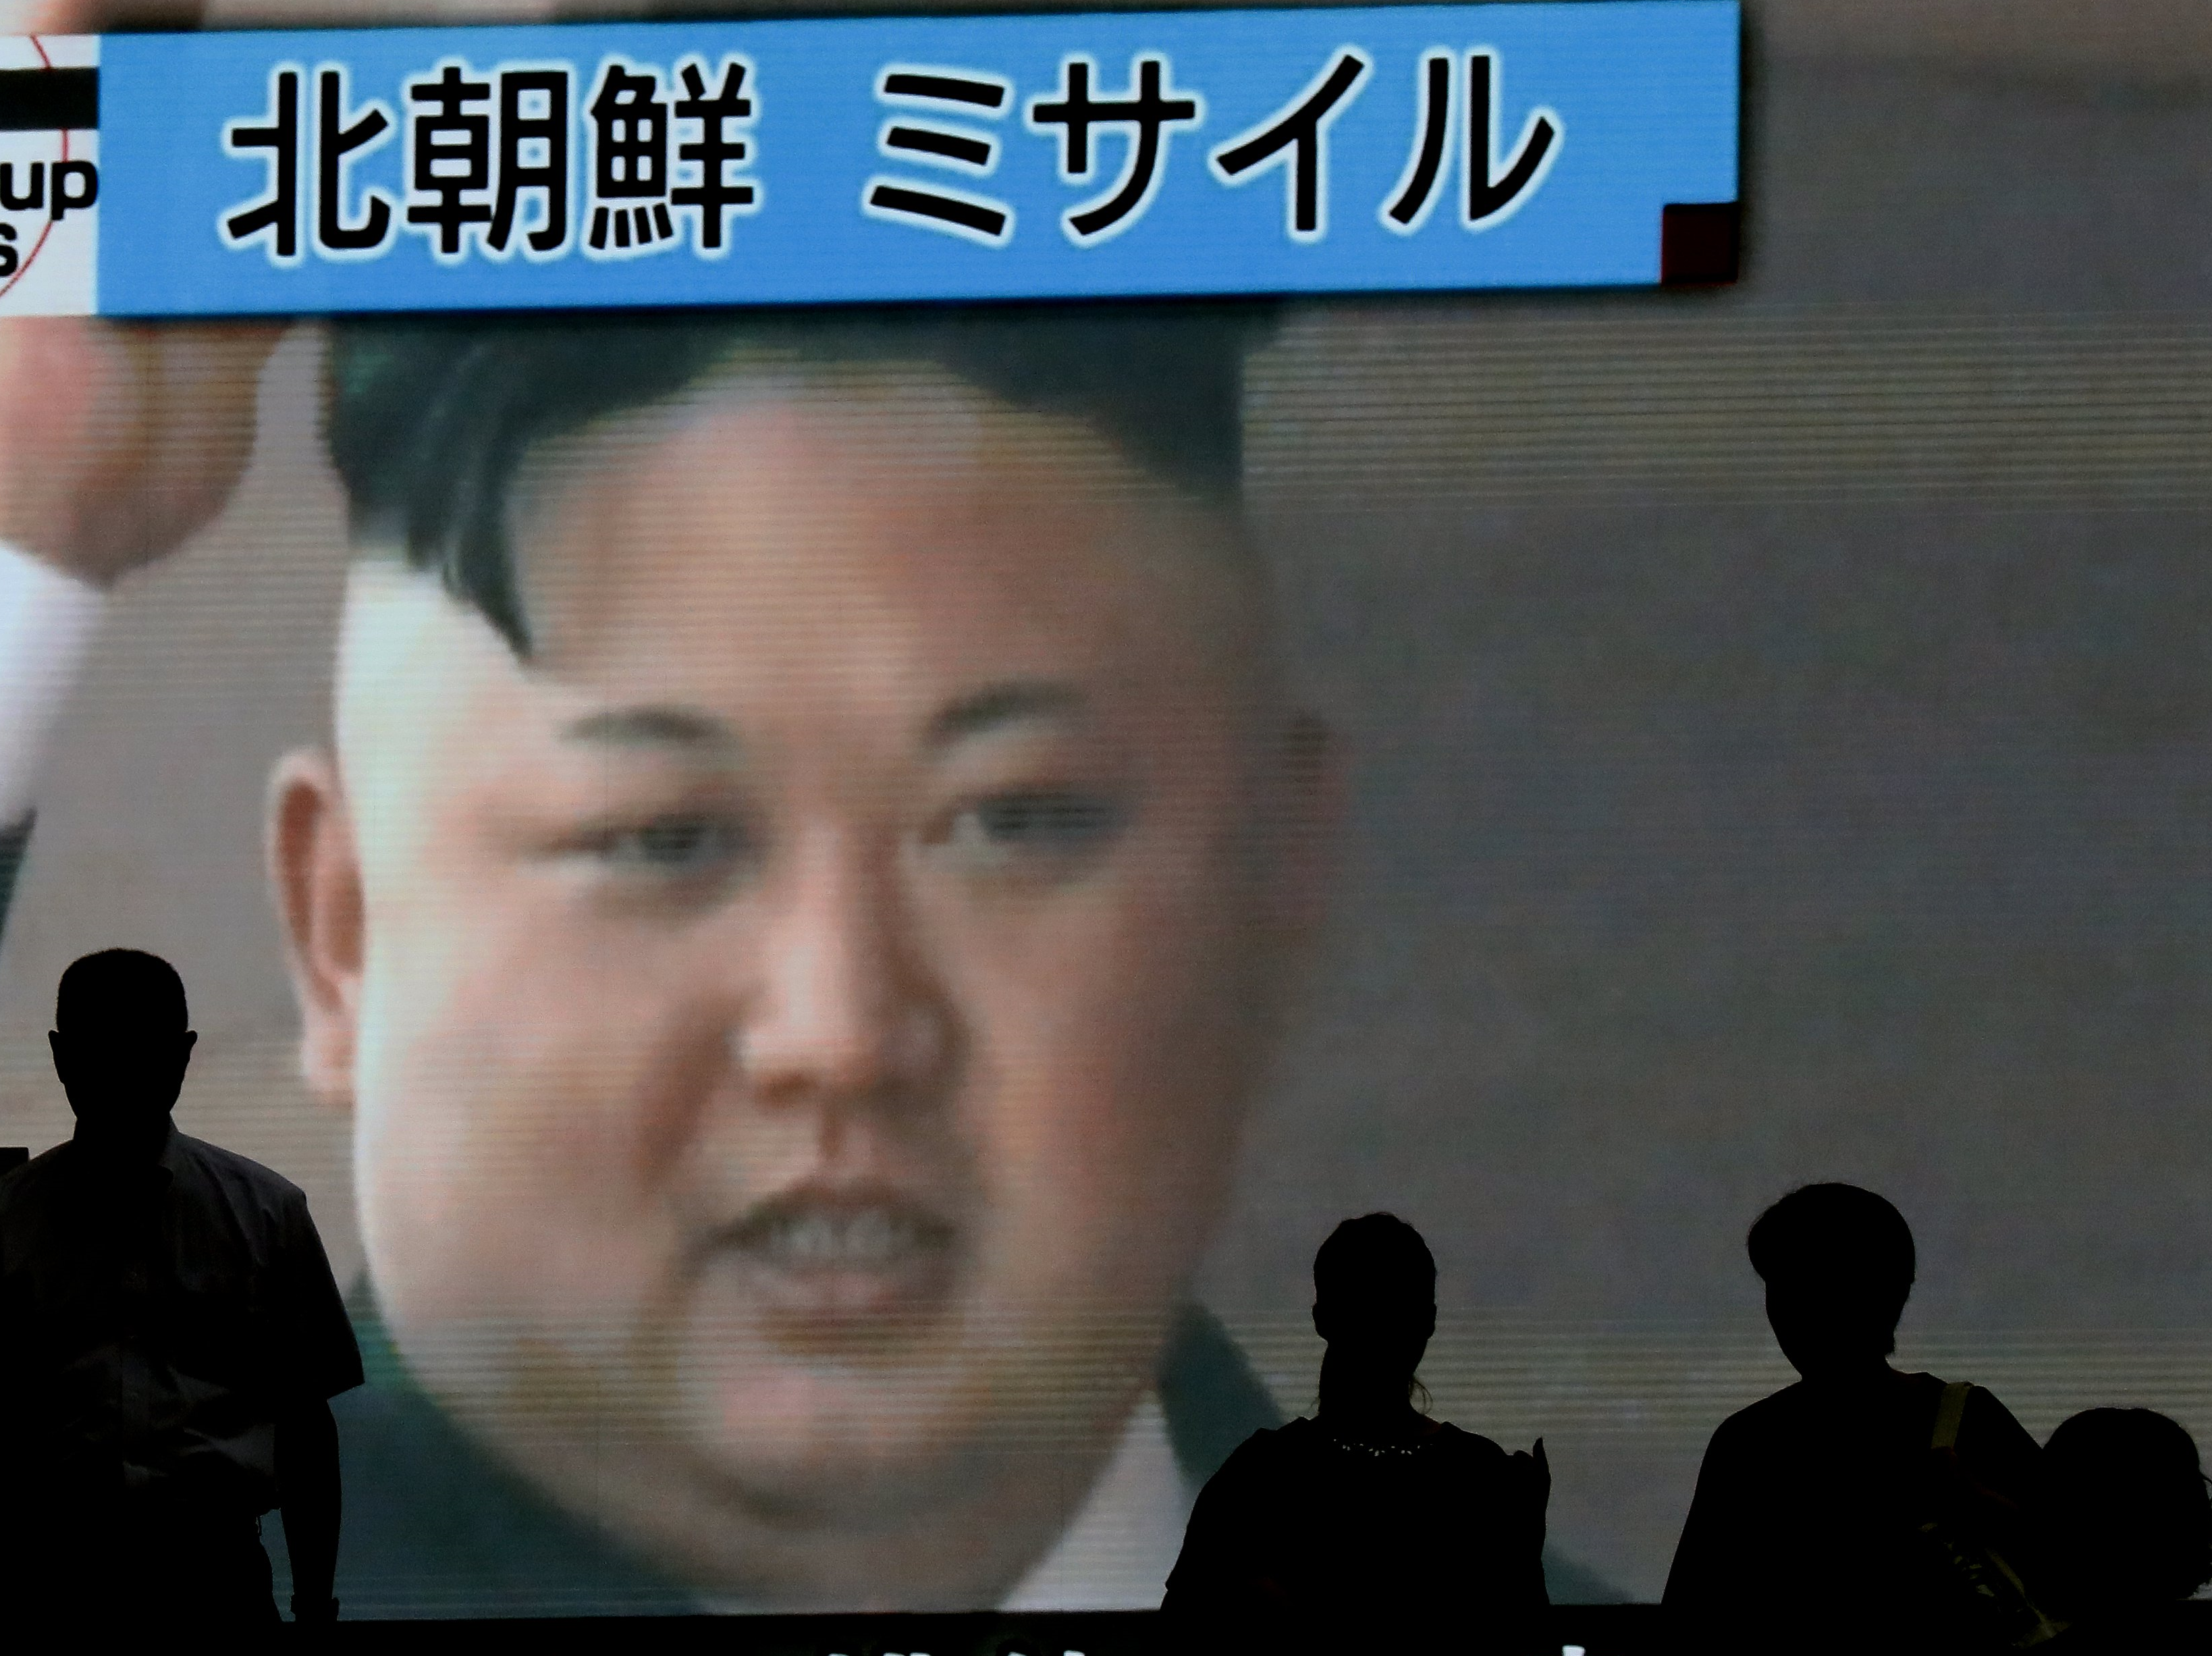 Noord-Korea, raket, Kim jong-un